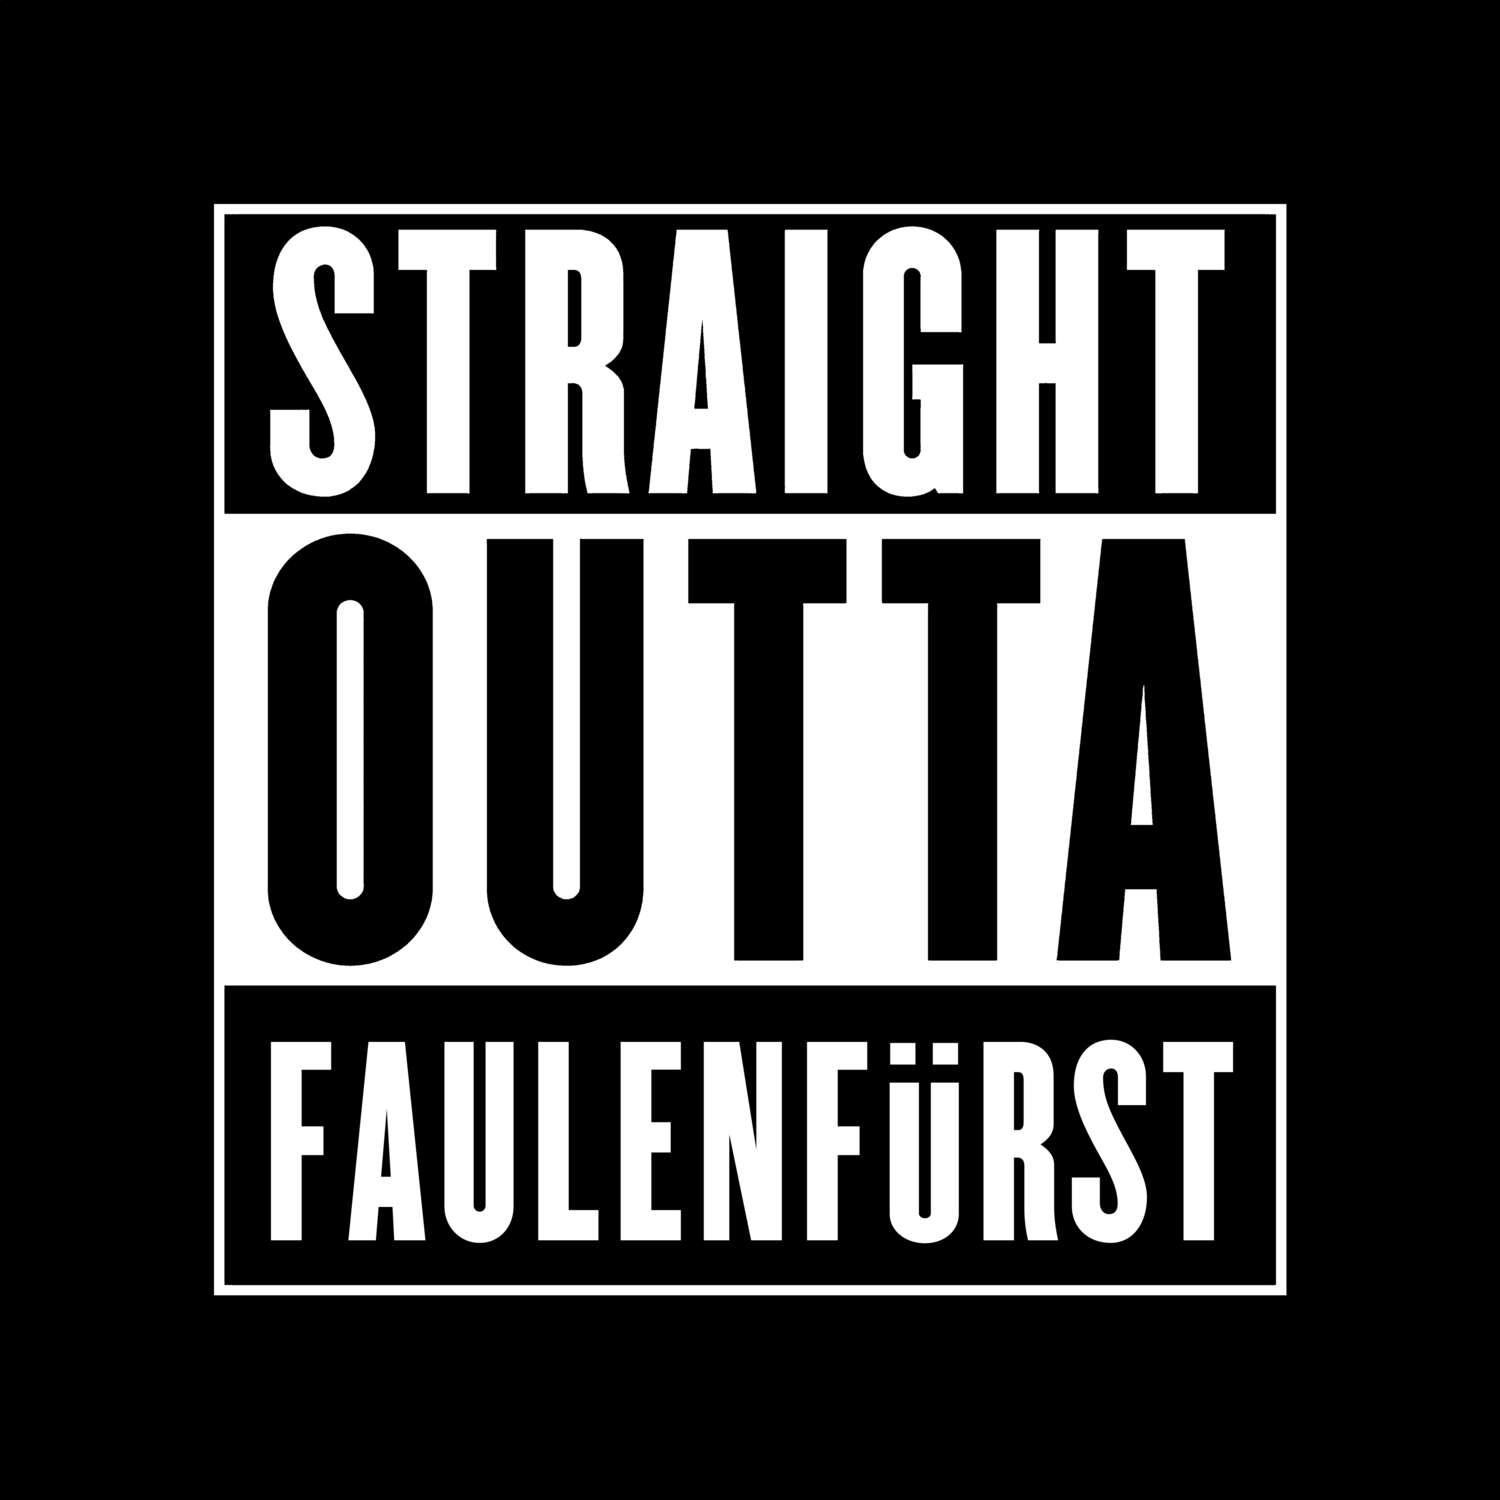 Faulenfürst T-Shirt »Straight Outta«